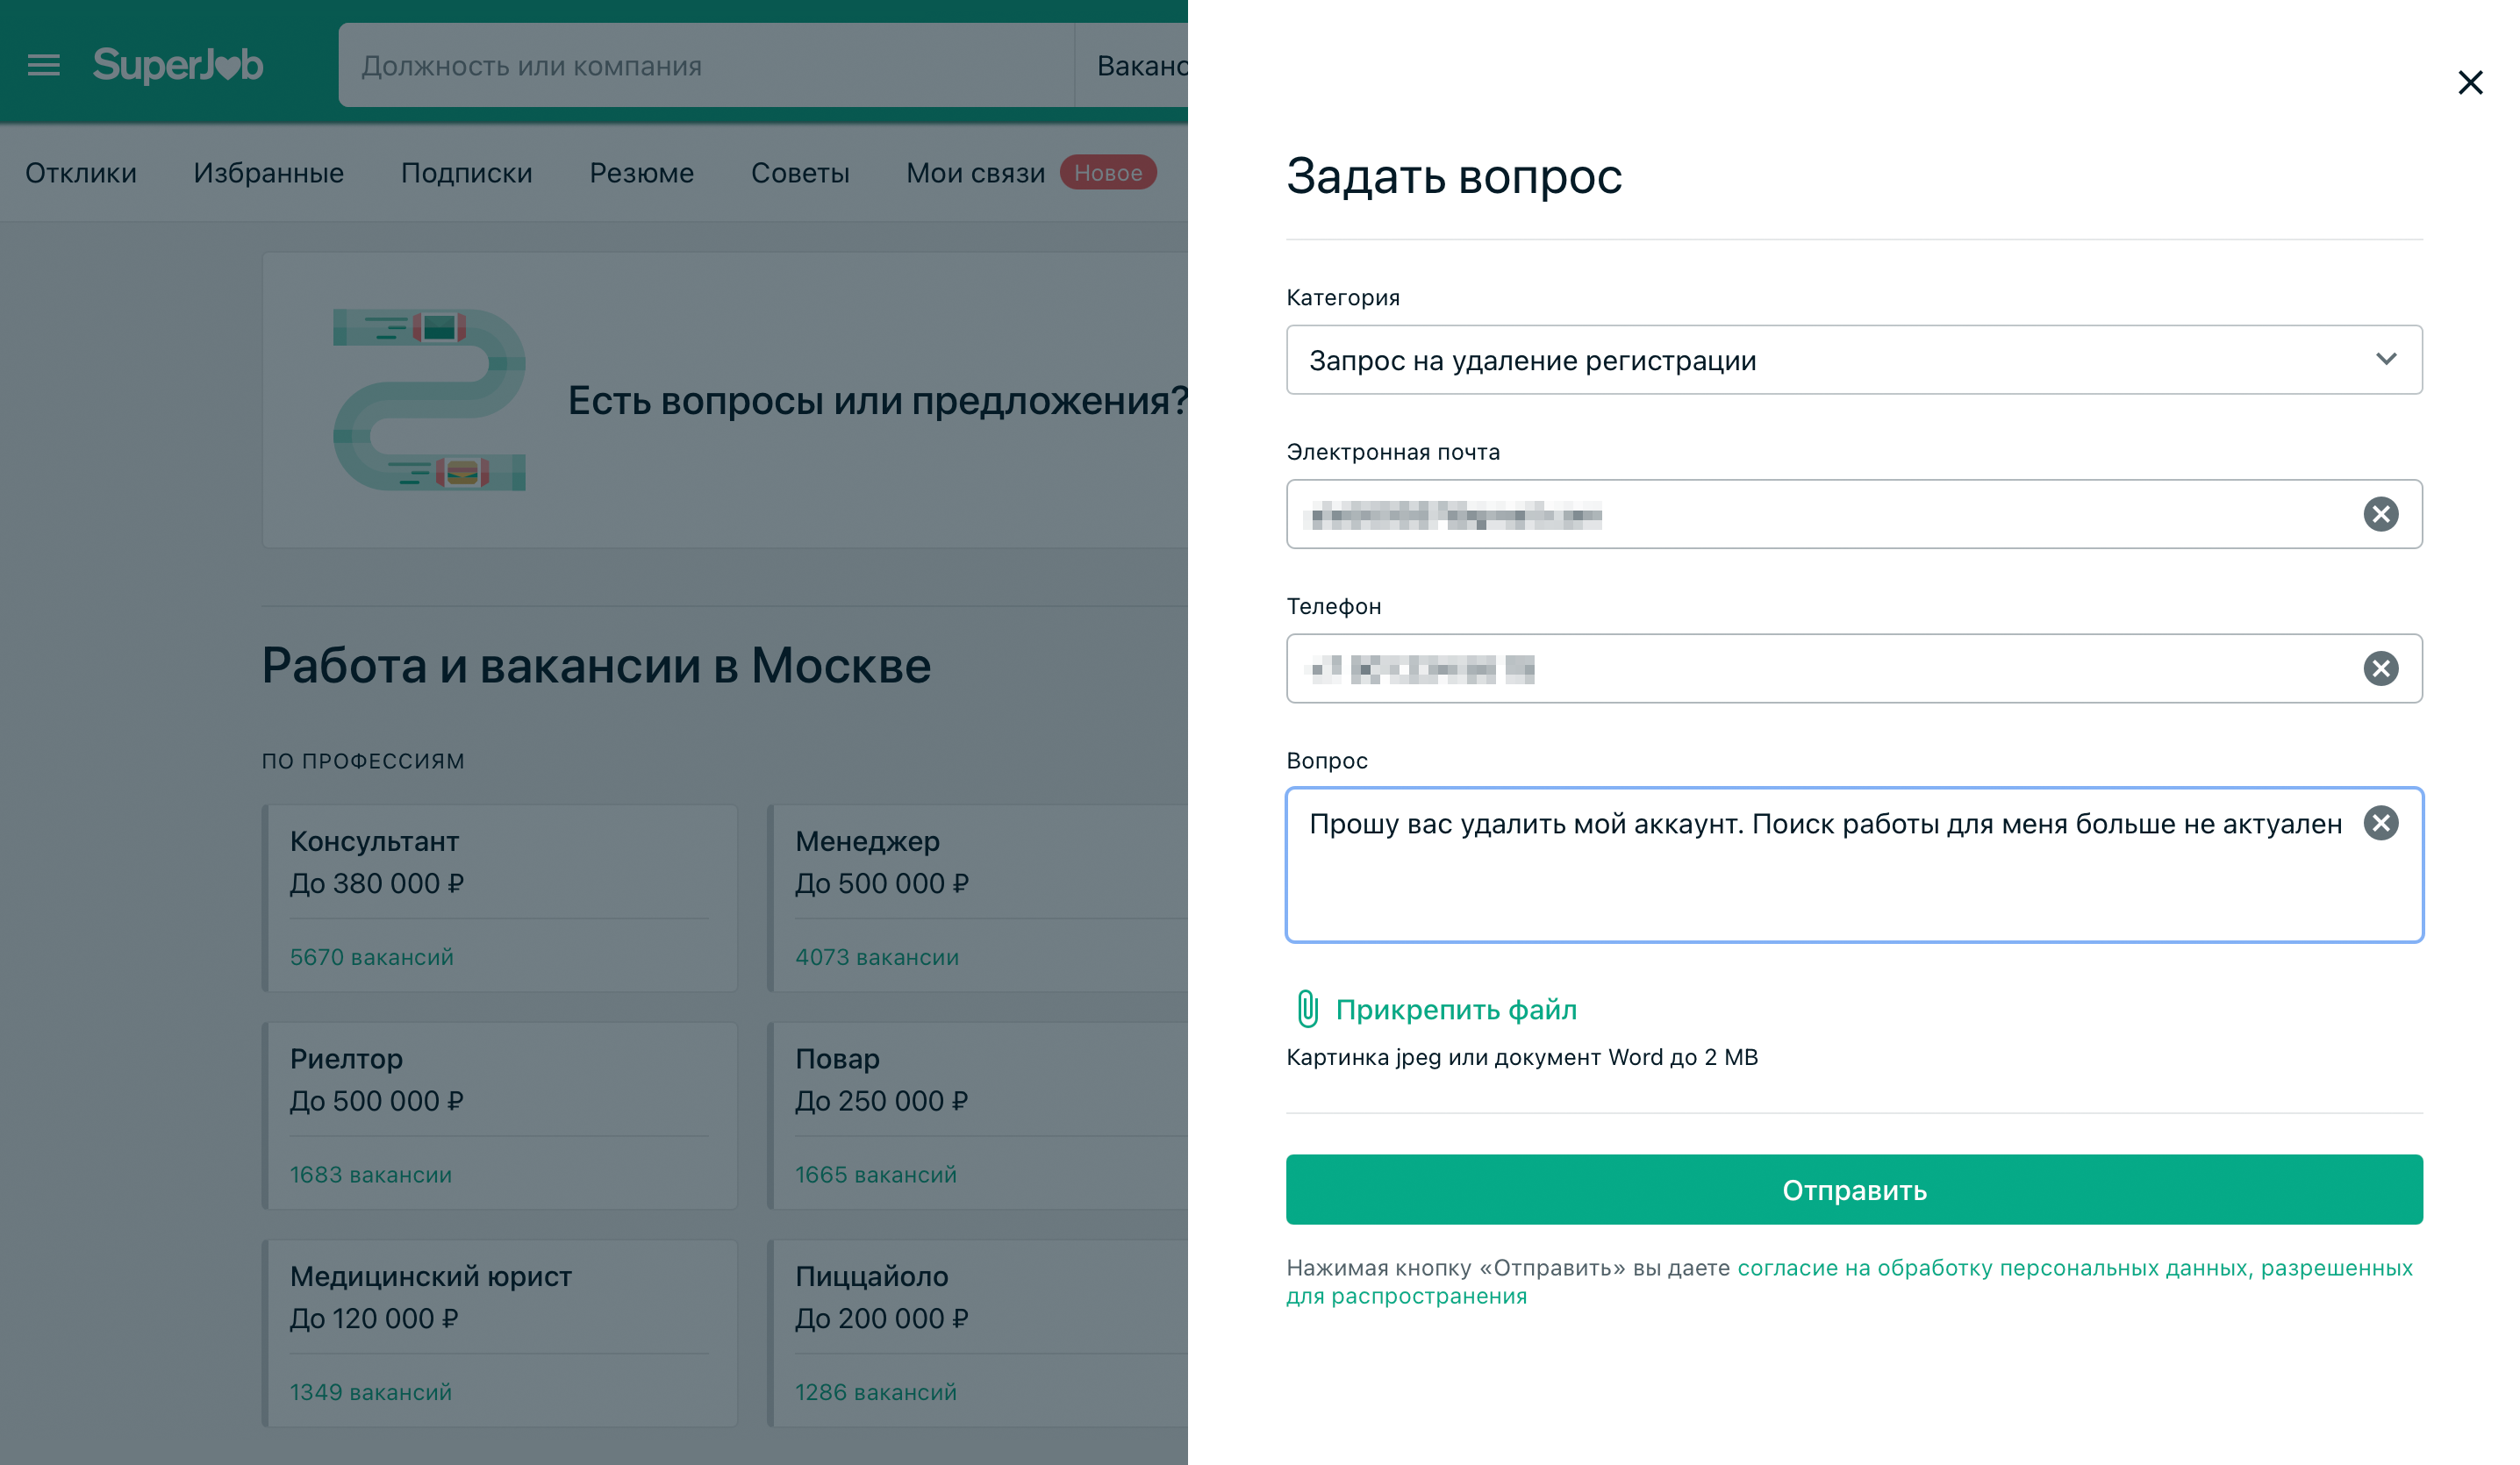 Инструкция, как удалить аккаунт на SuperJob. Источник: superjob.ru